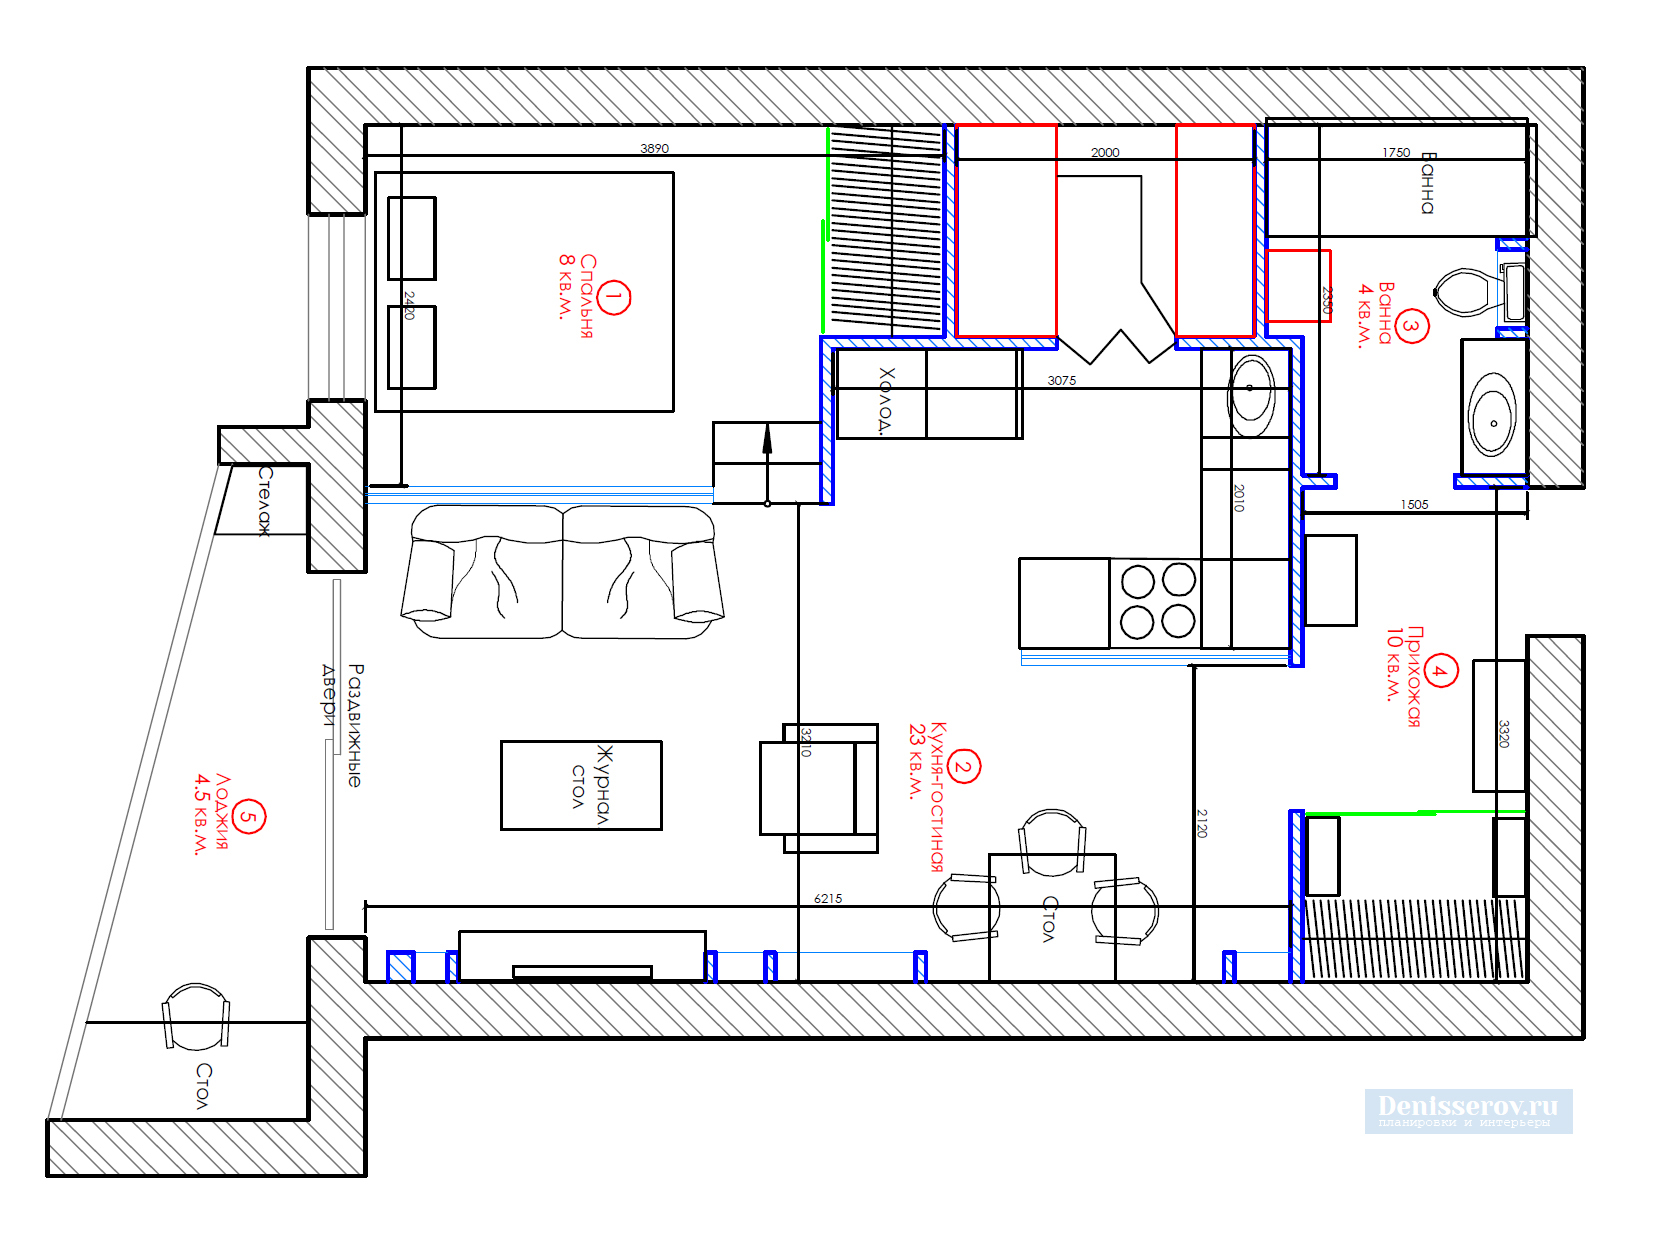 Дизайнерская квартира: 15 дизайн-проектов интерьеров и реальных ремонтов под ключ